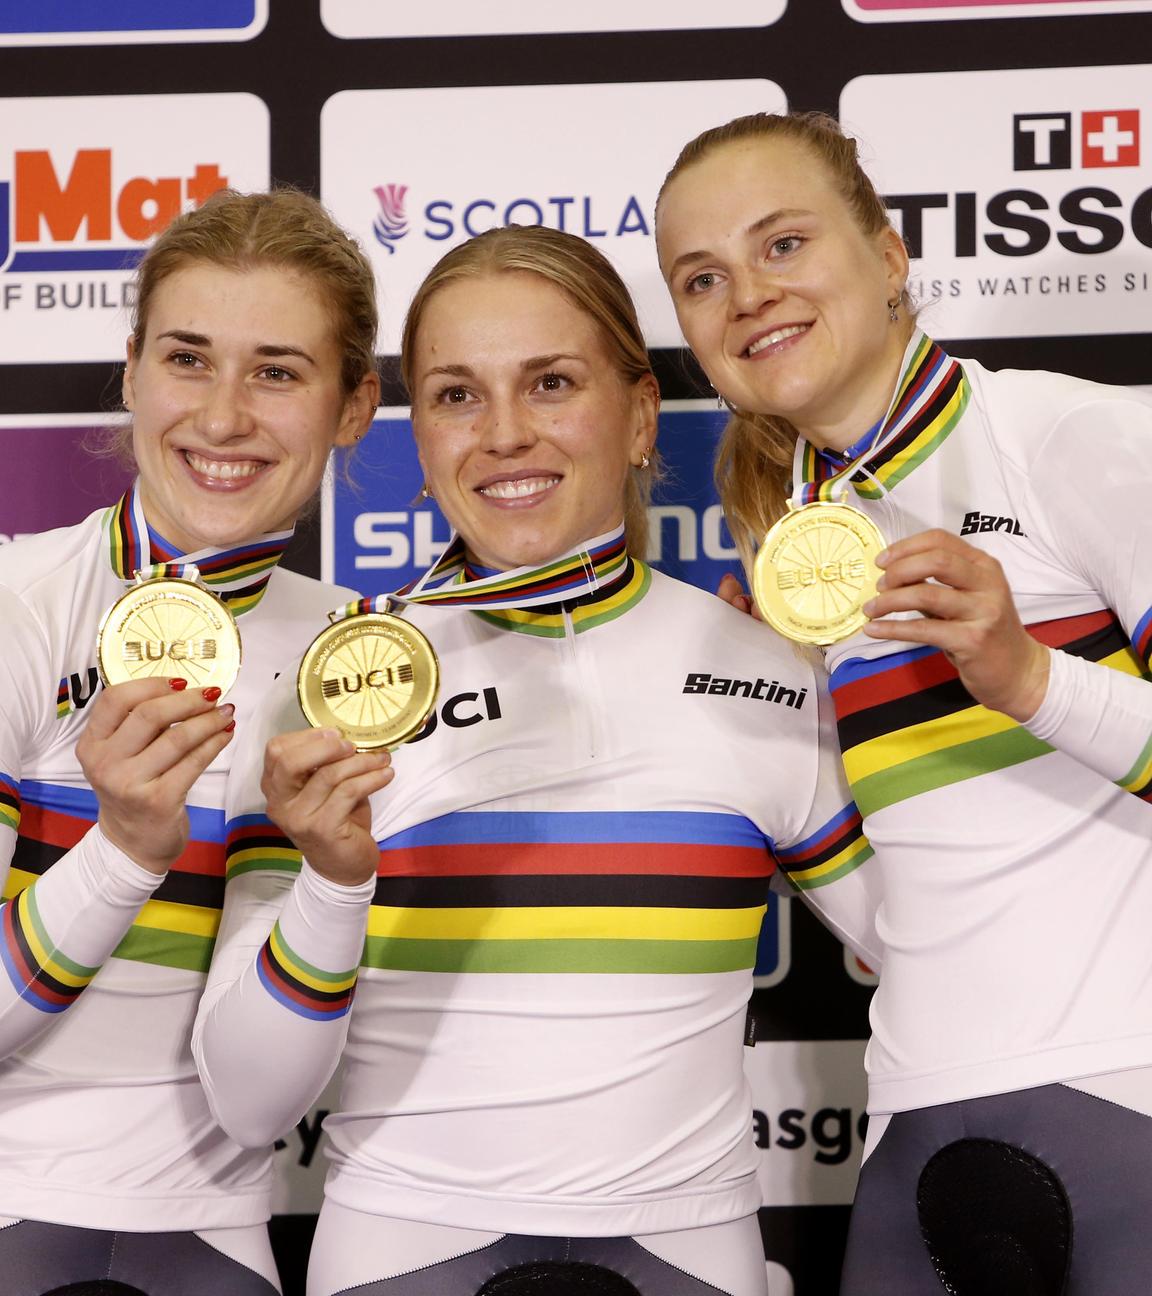 Bahn-Rad-Weltmeisterschaft, Teamsprint, Frauen: Die deutschen Fahrerinnen Pauline Sophie Grabosch, Emma Hinze und Lea Friedrich (von links) zeigen ihre Goldmedaillen.